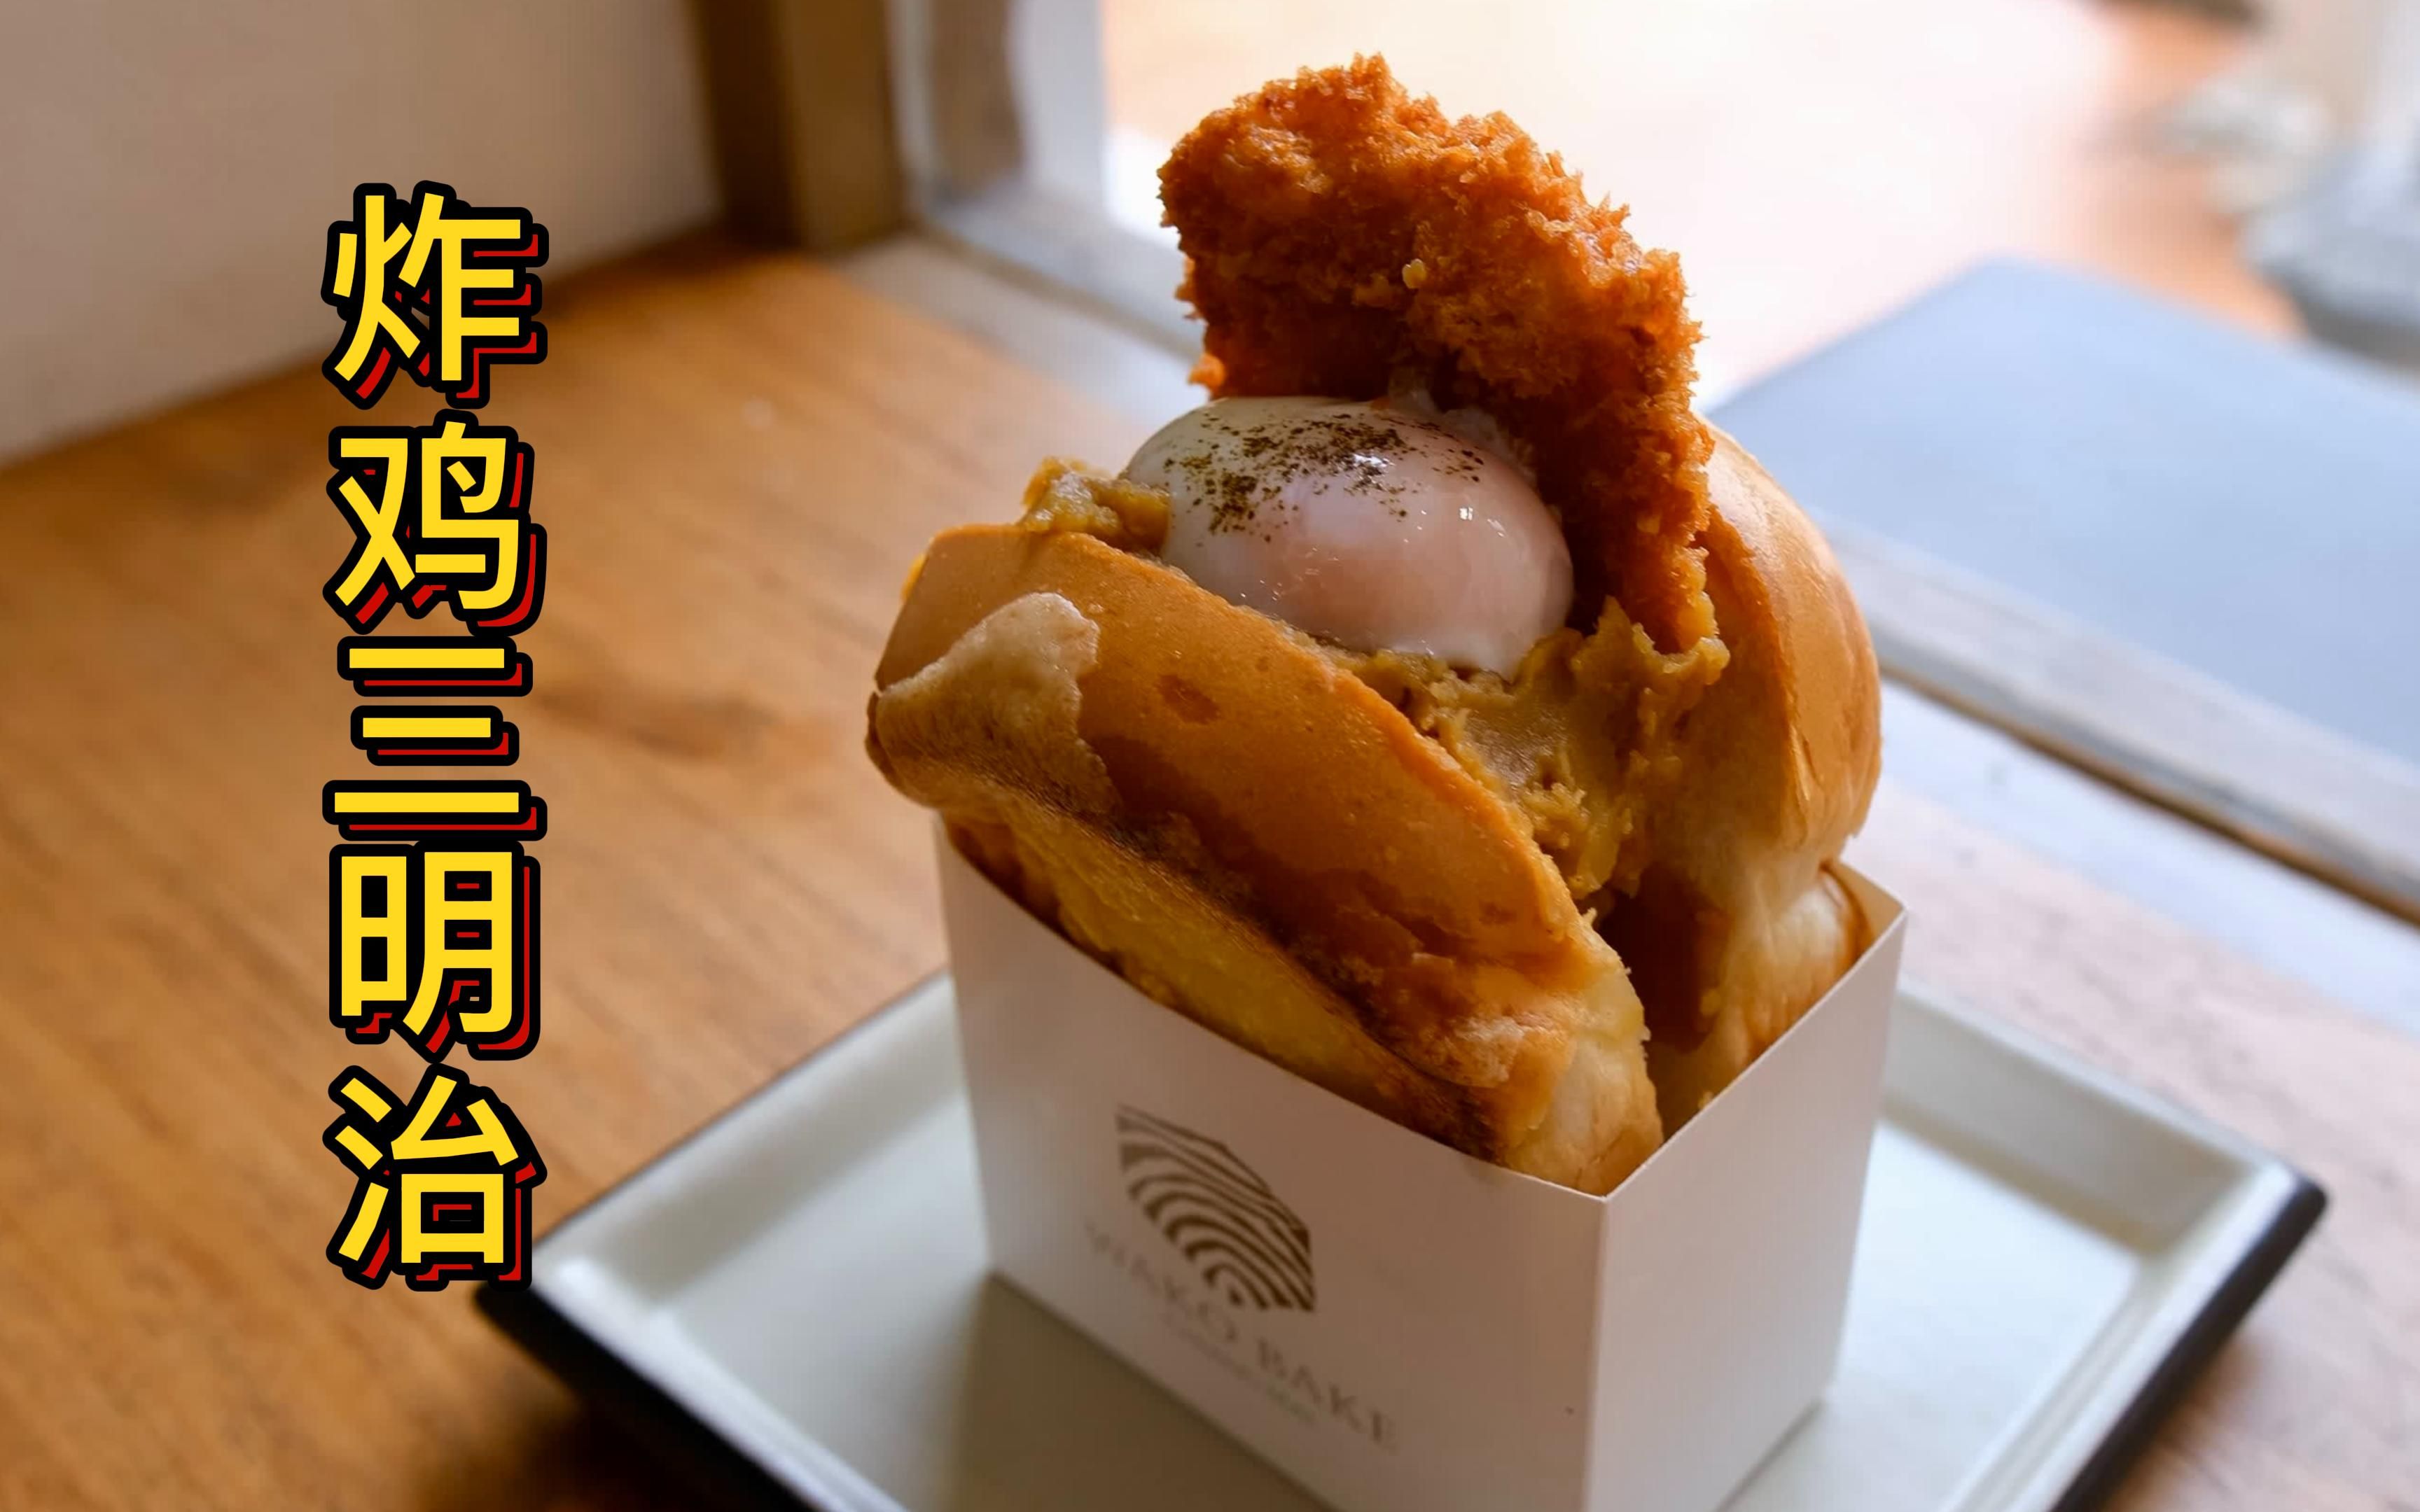 「泰国文森」炸鸡三明治 - 清迈美食探店